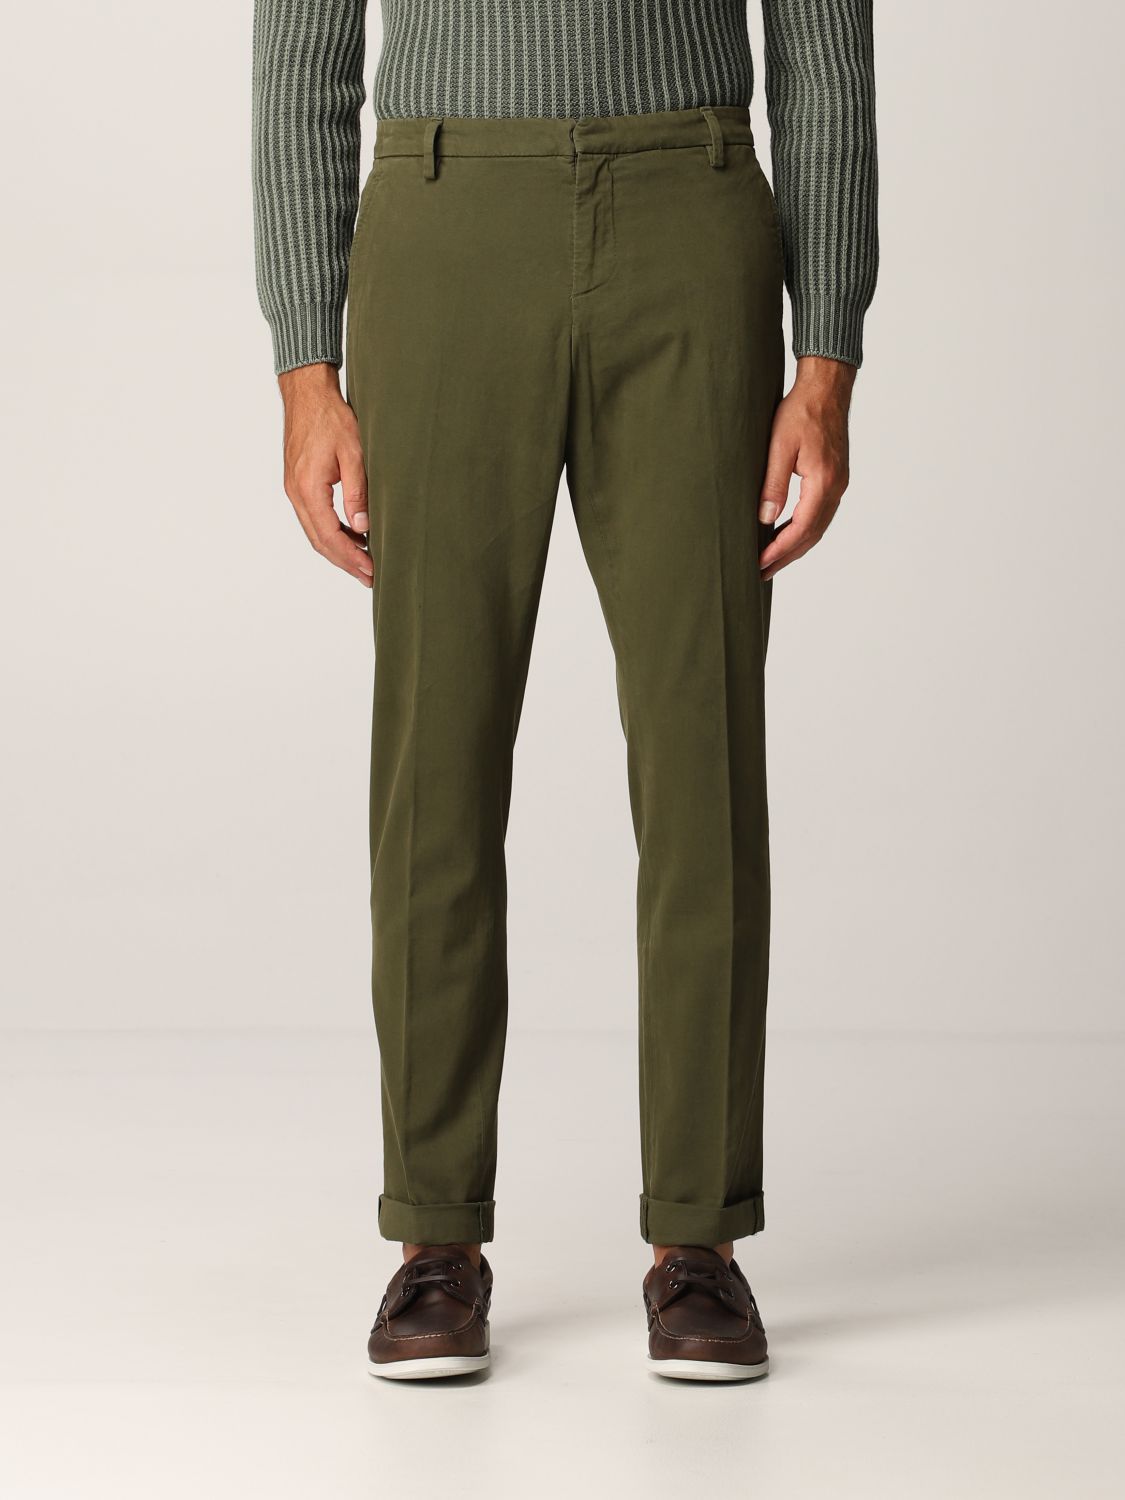 Pantalone Gaubert in cotone stretch Giglio.com Uomo Abbigliamento Pantaloni e jeans Pantaloni Pantaloni stretch 